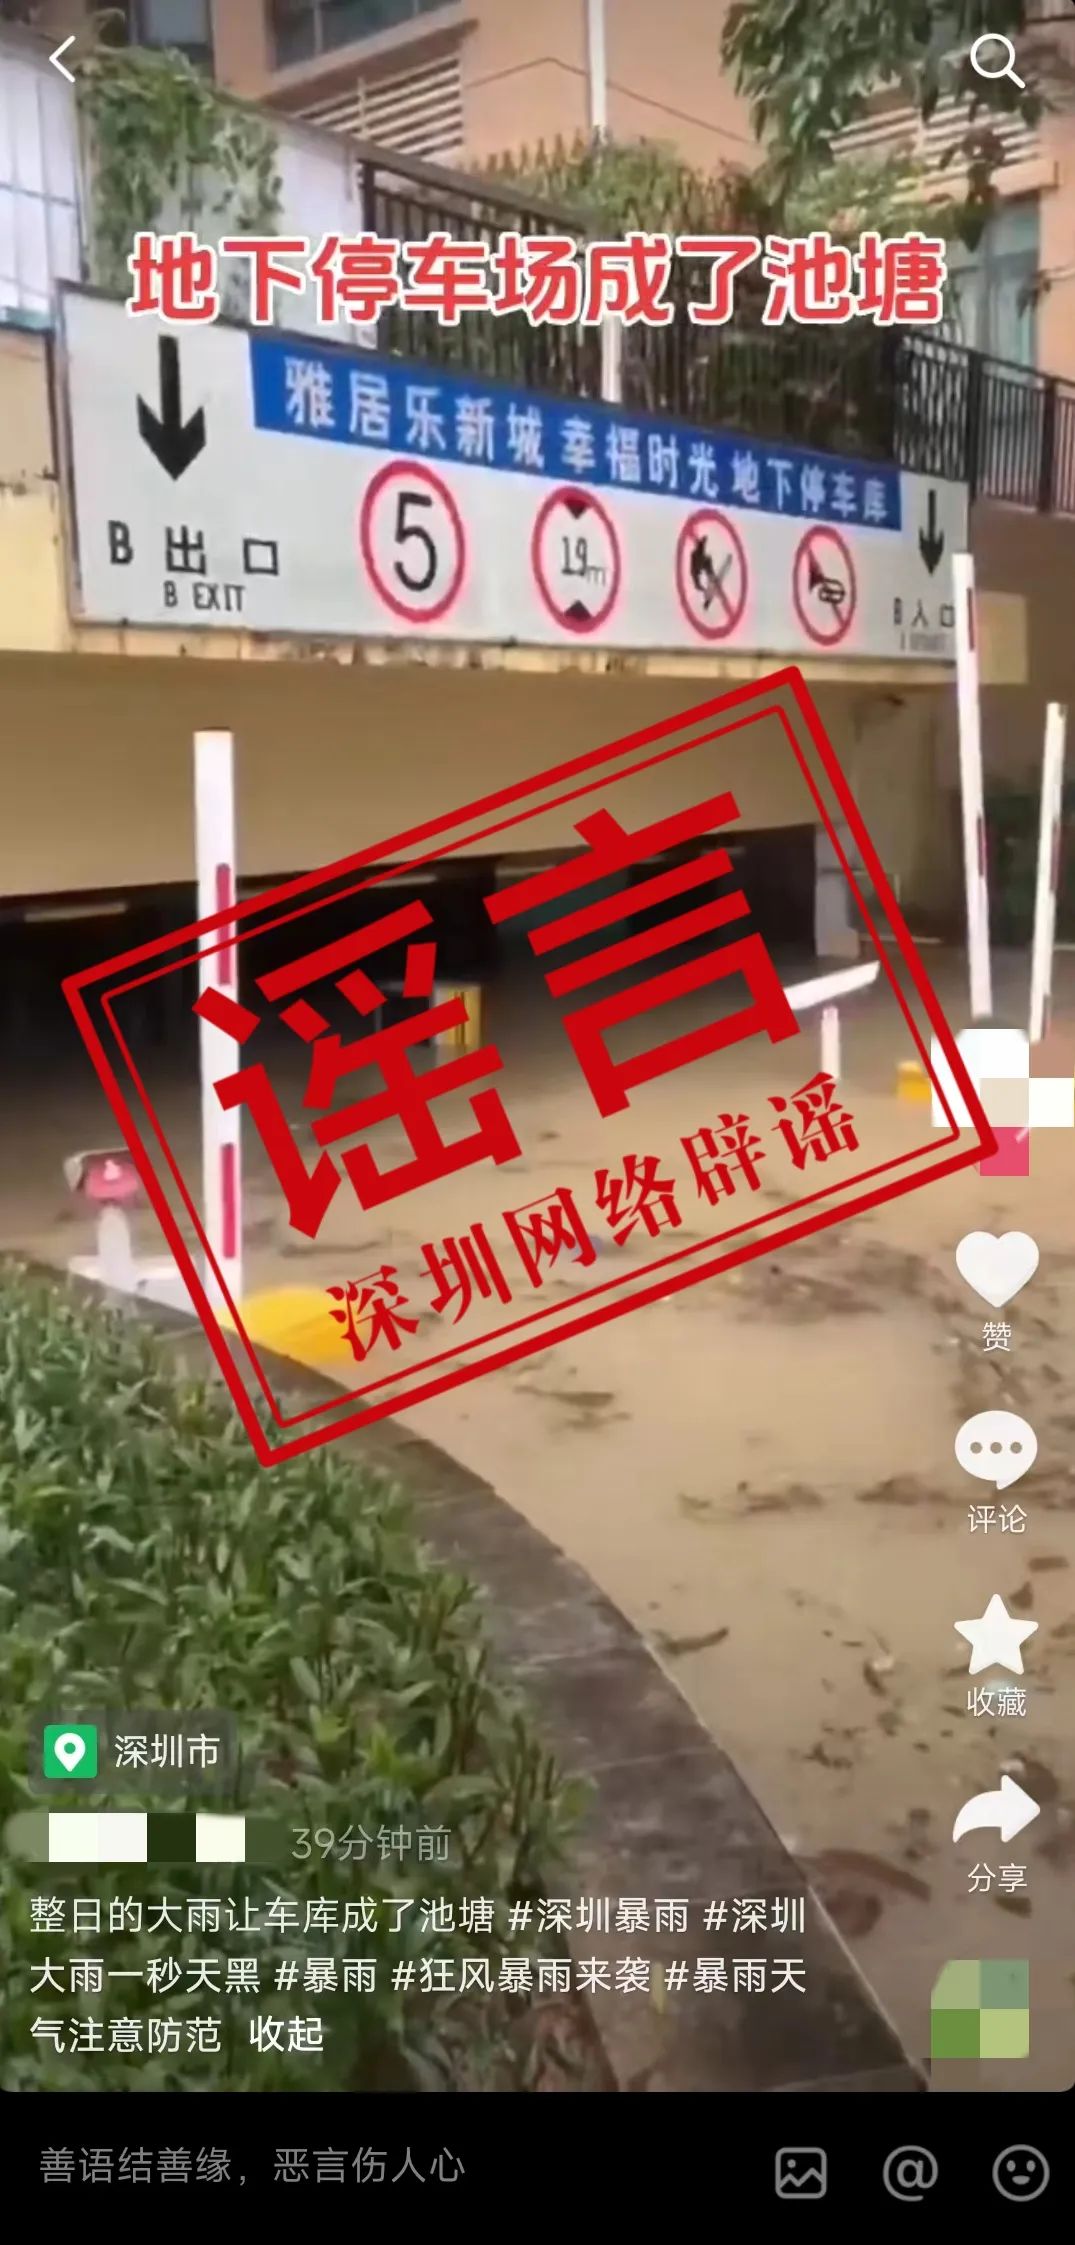  Garage flooded due to rainstorm in Shenzhen? rumor!